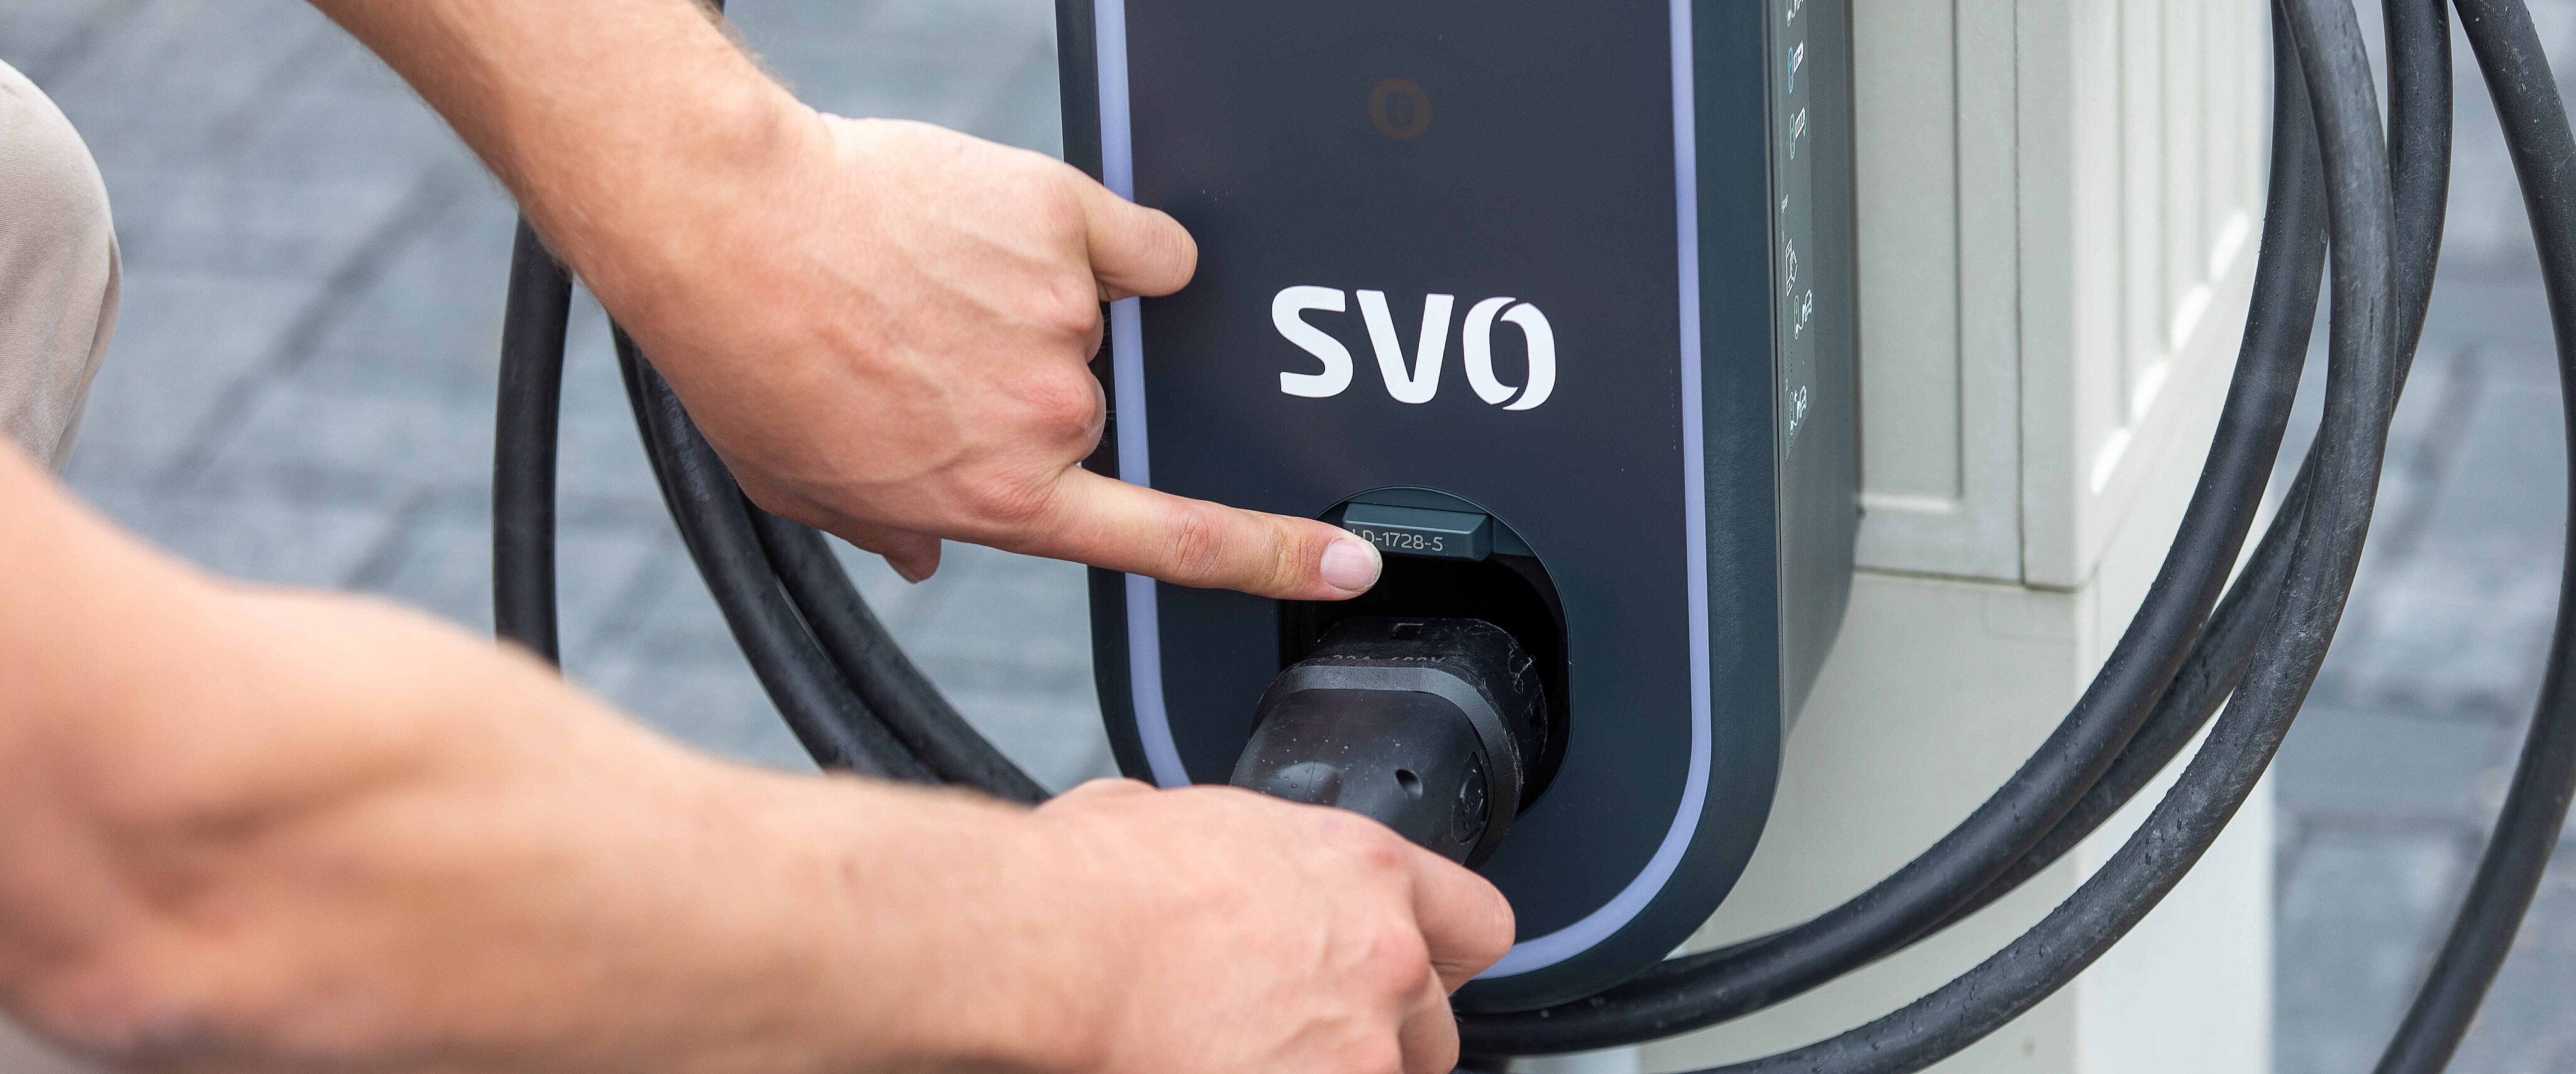 Foto zeigt die Hand einer Person, die einen Ladestecker in die Buchse eines Elektroautos steckt. 